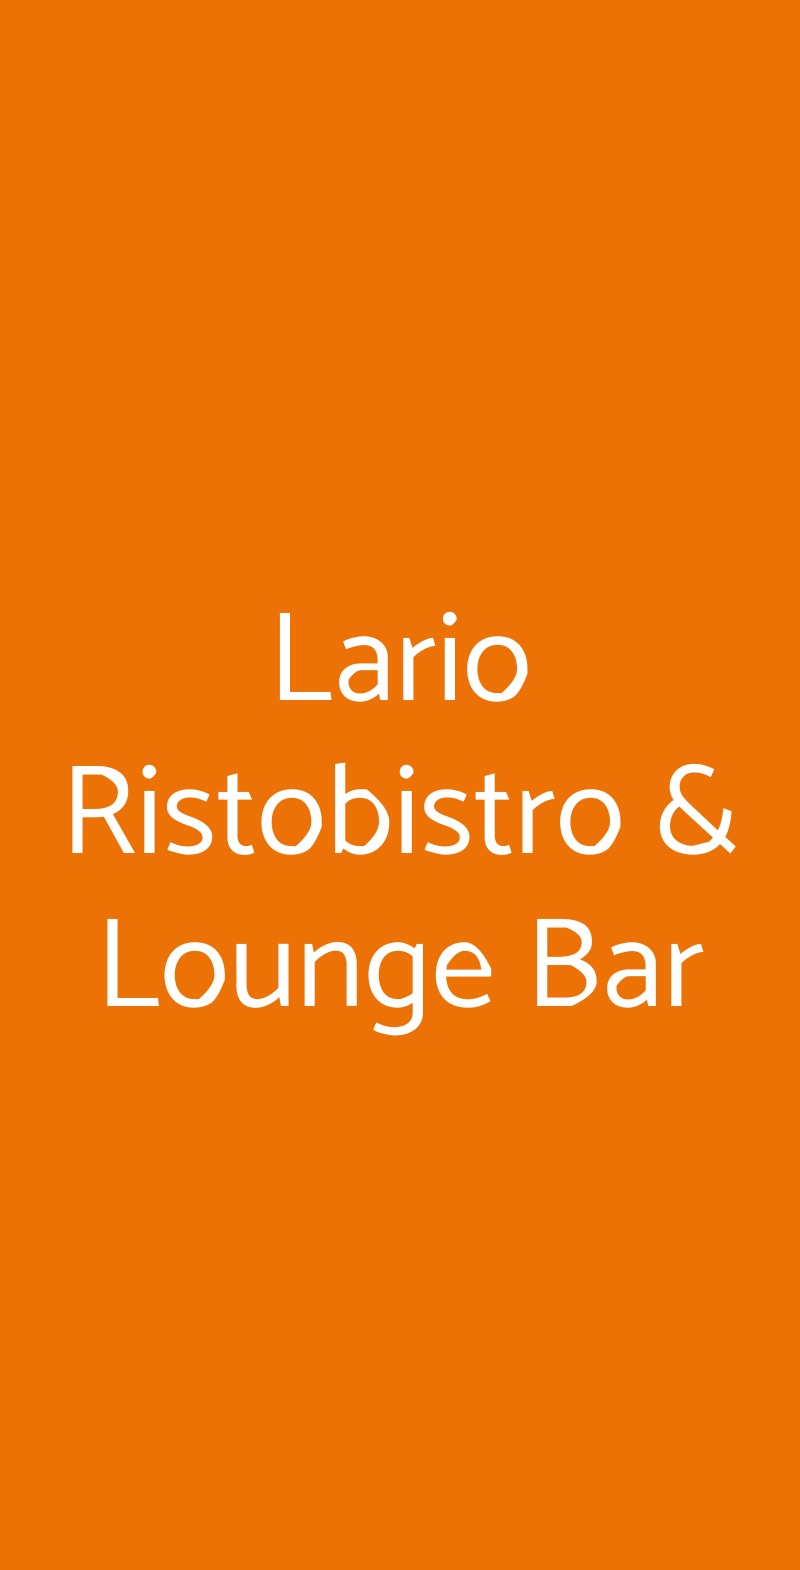 Lario Ristobistro & Lounge Bar Albavilla menù 1 pagina